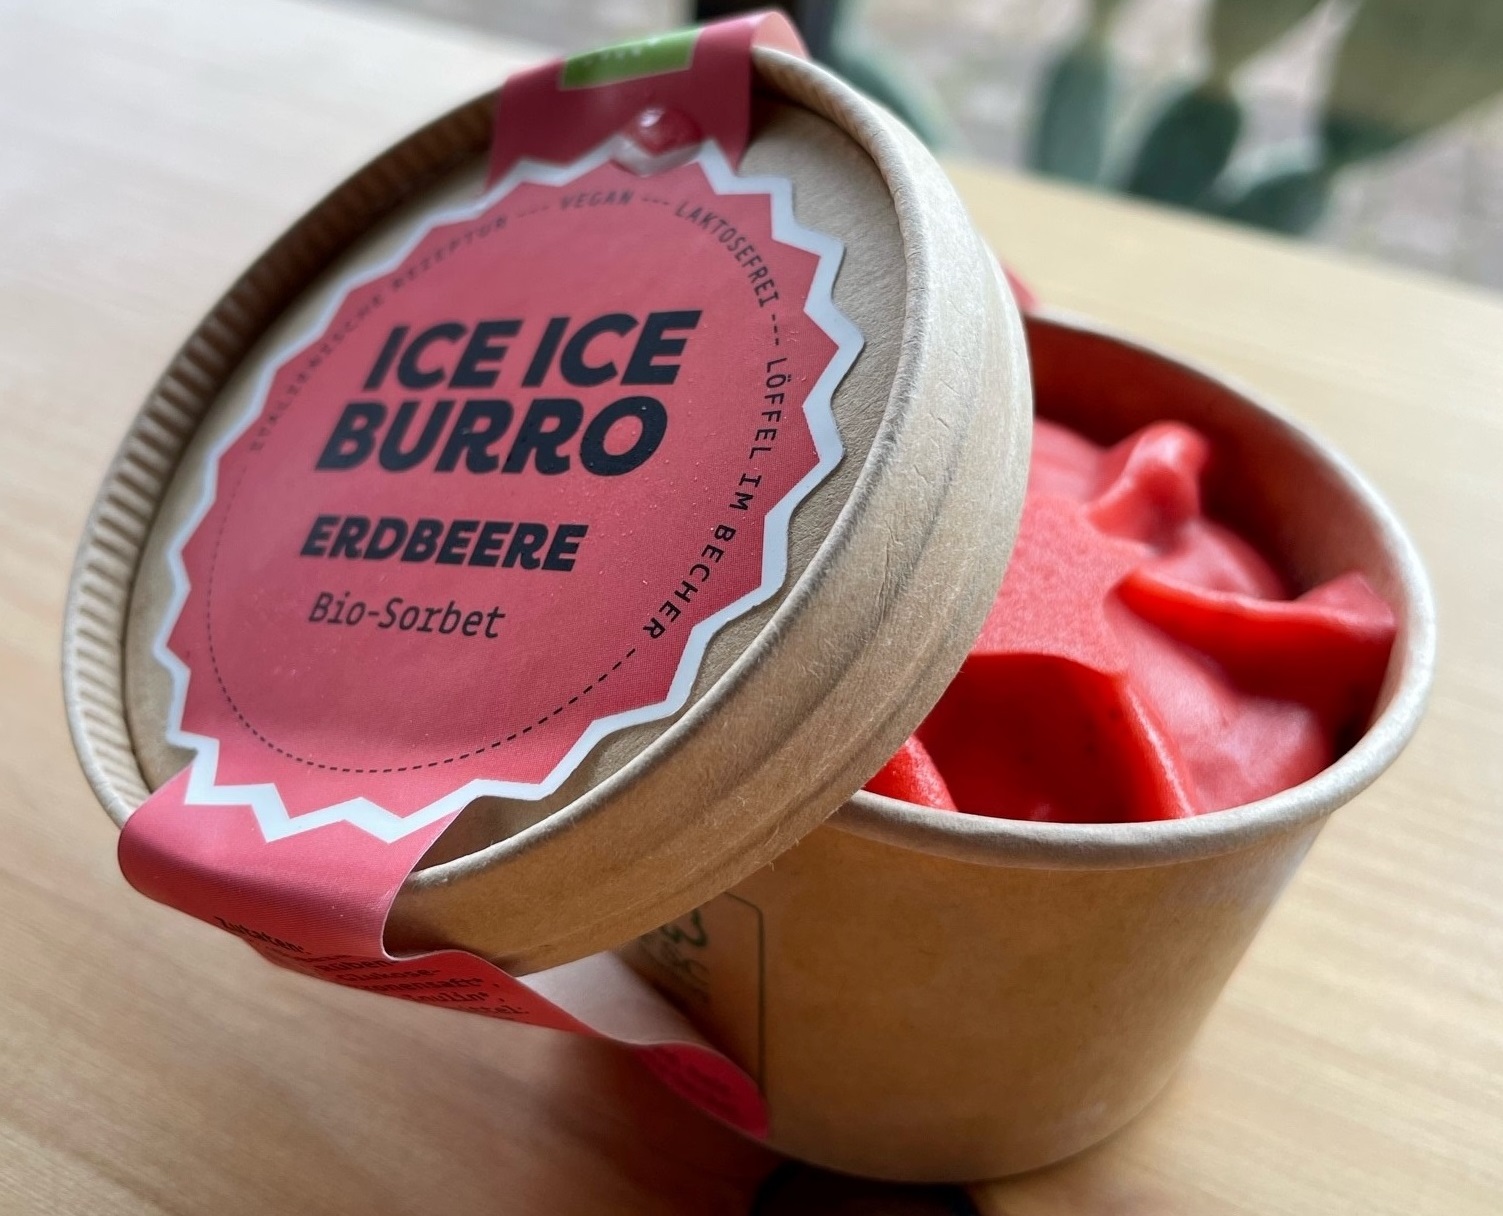 Burro Burro - Konstanz - Ice Ice Burro - alle